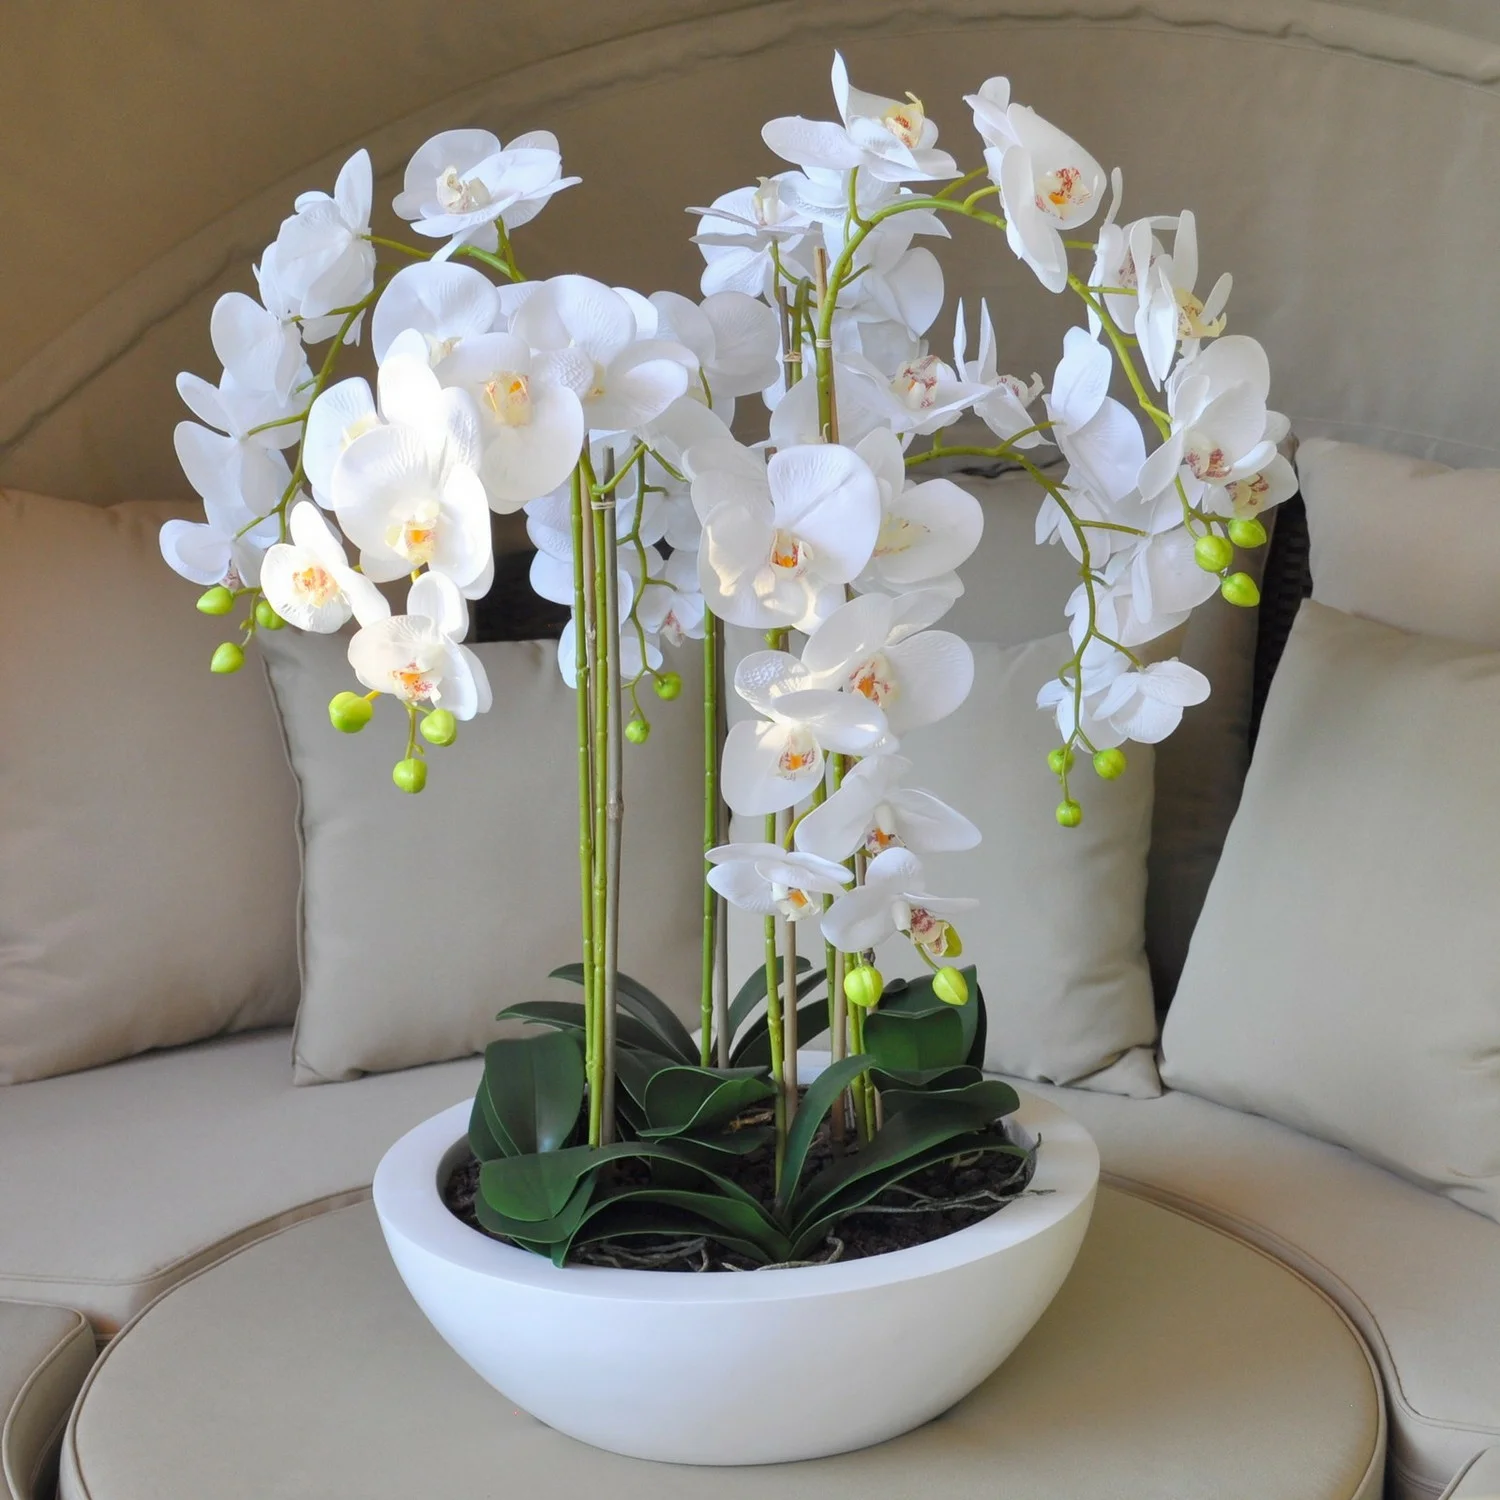 Как ухаживать за орхидеей в домашних условиях?